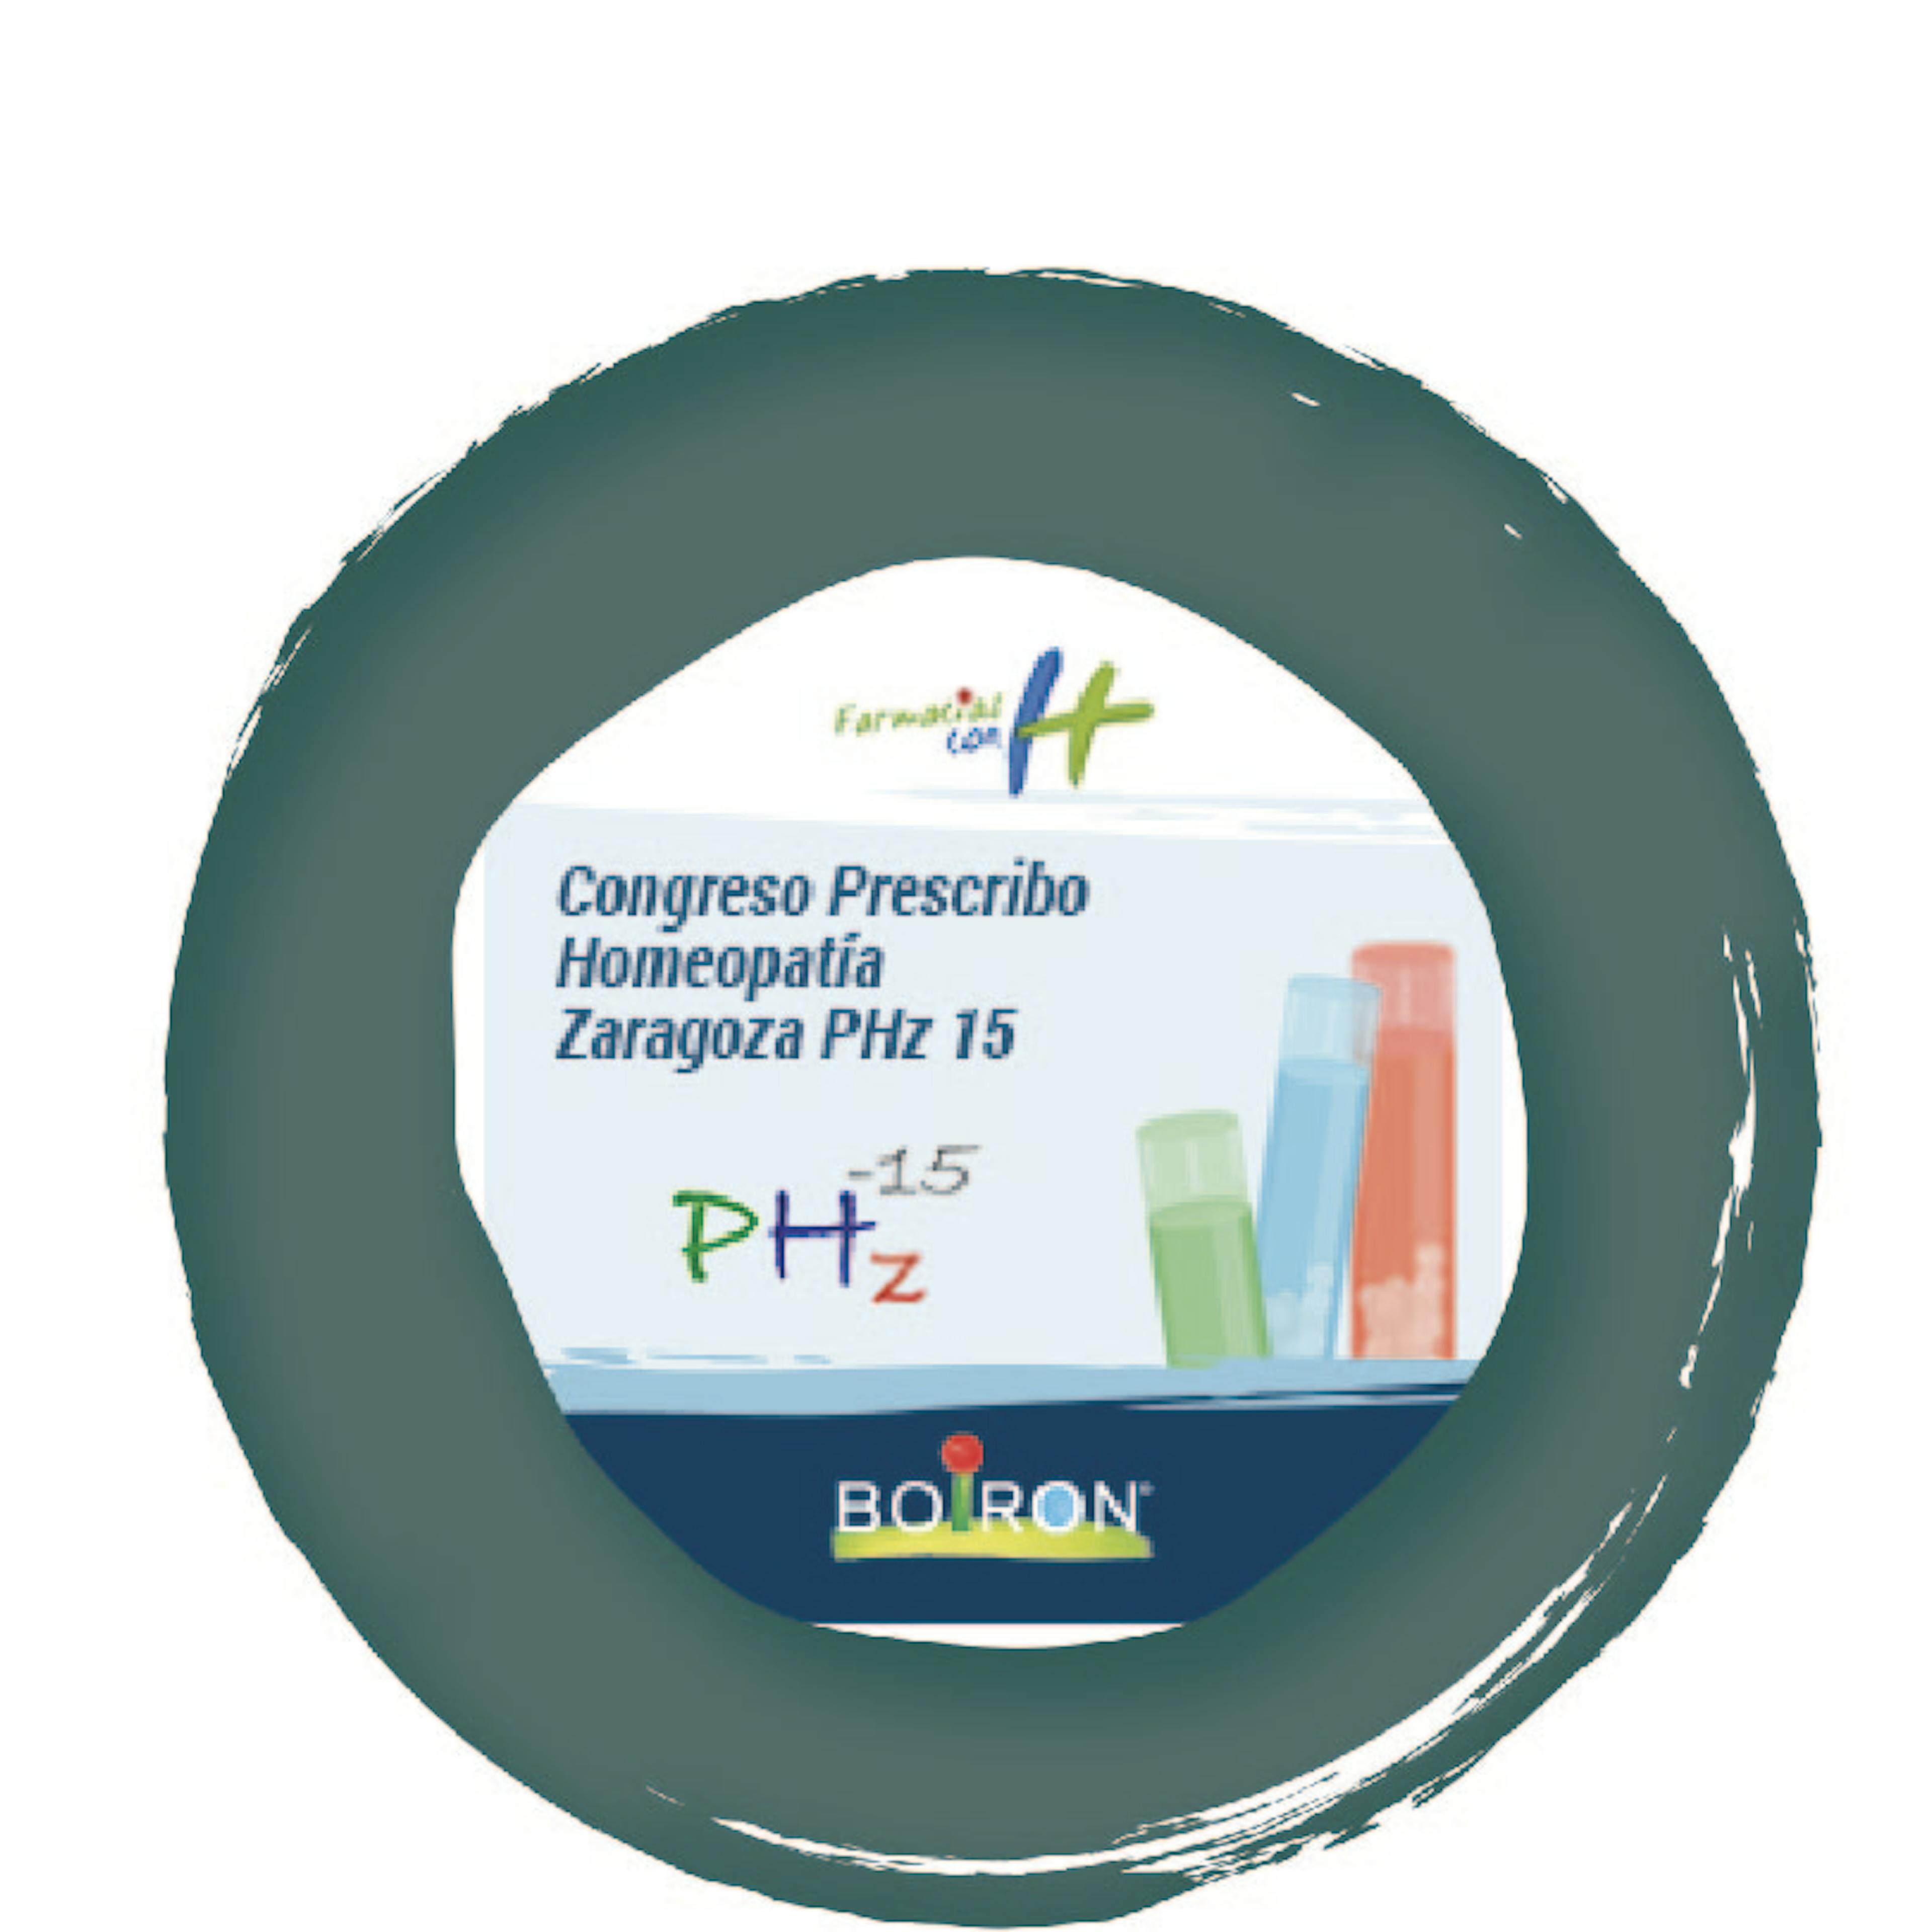 El Congreso Prescribo Homeopatía Zaragoza (PHz 15) reunió a más de 300 profesionales de la salud